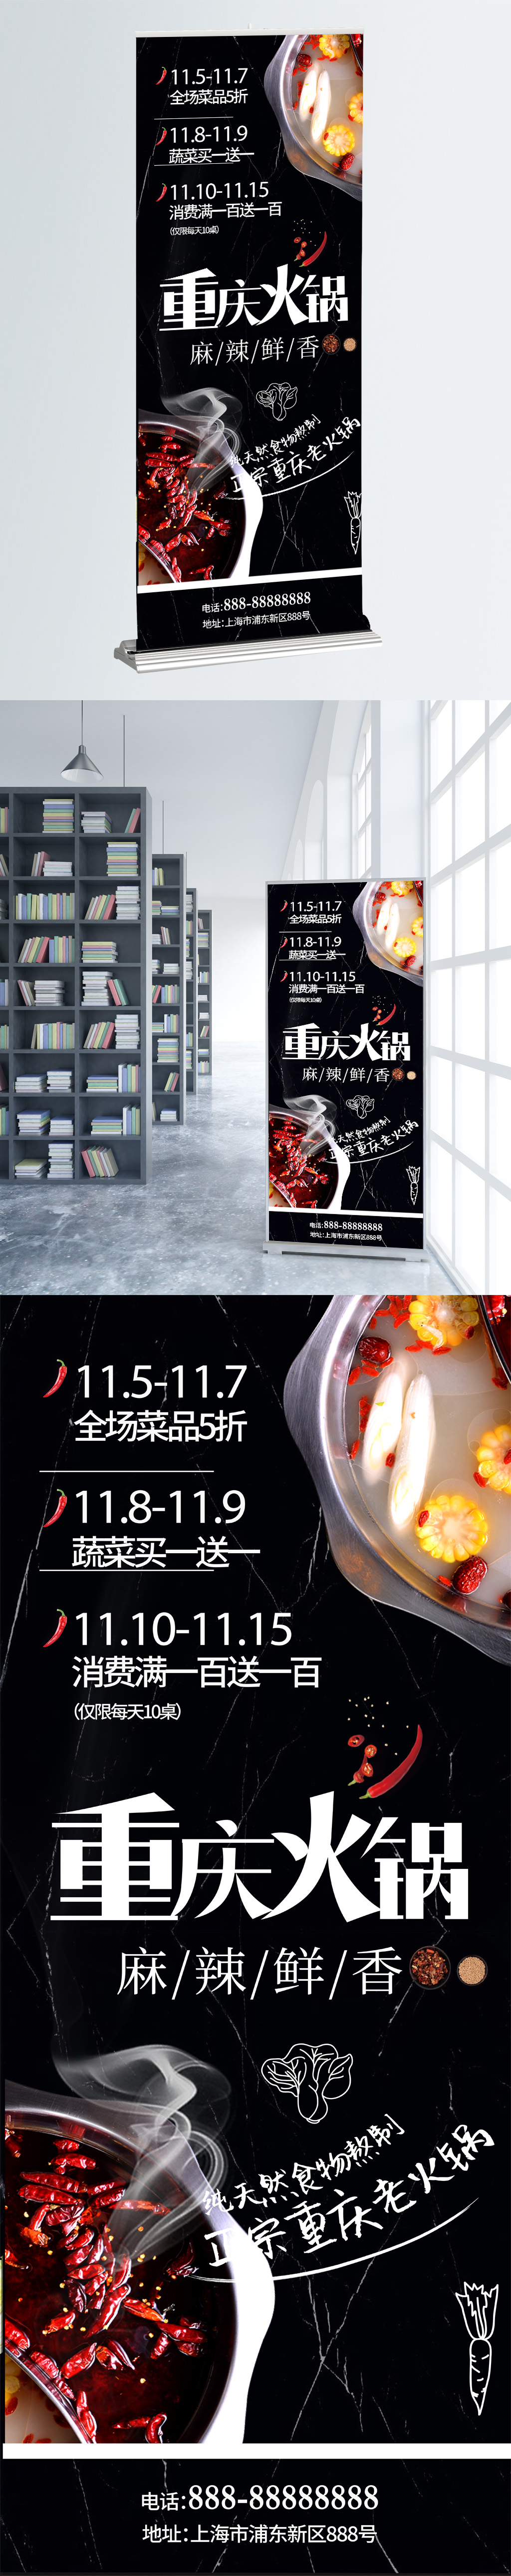 重庆火锅展架促销黑白配色简约高端图片